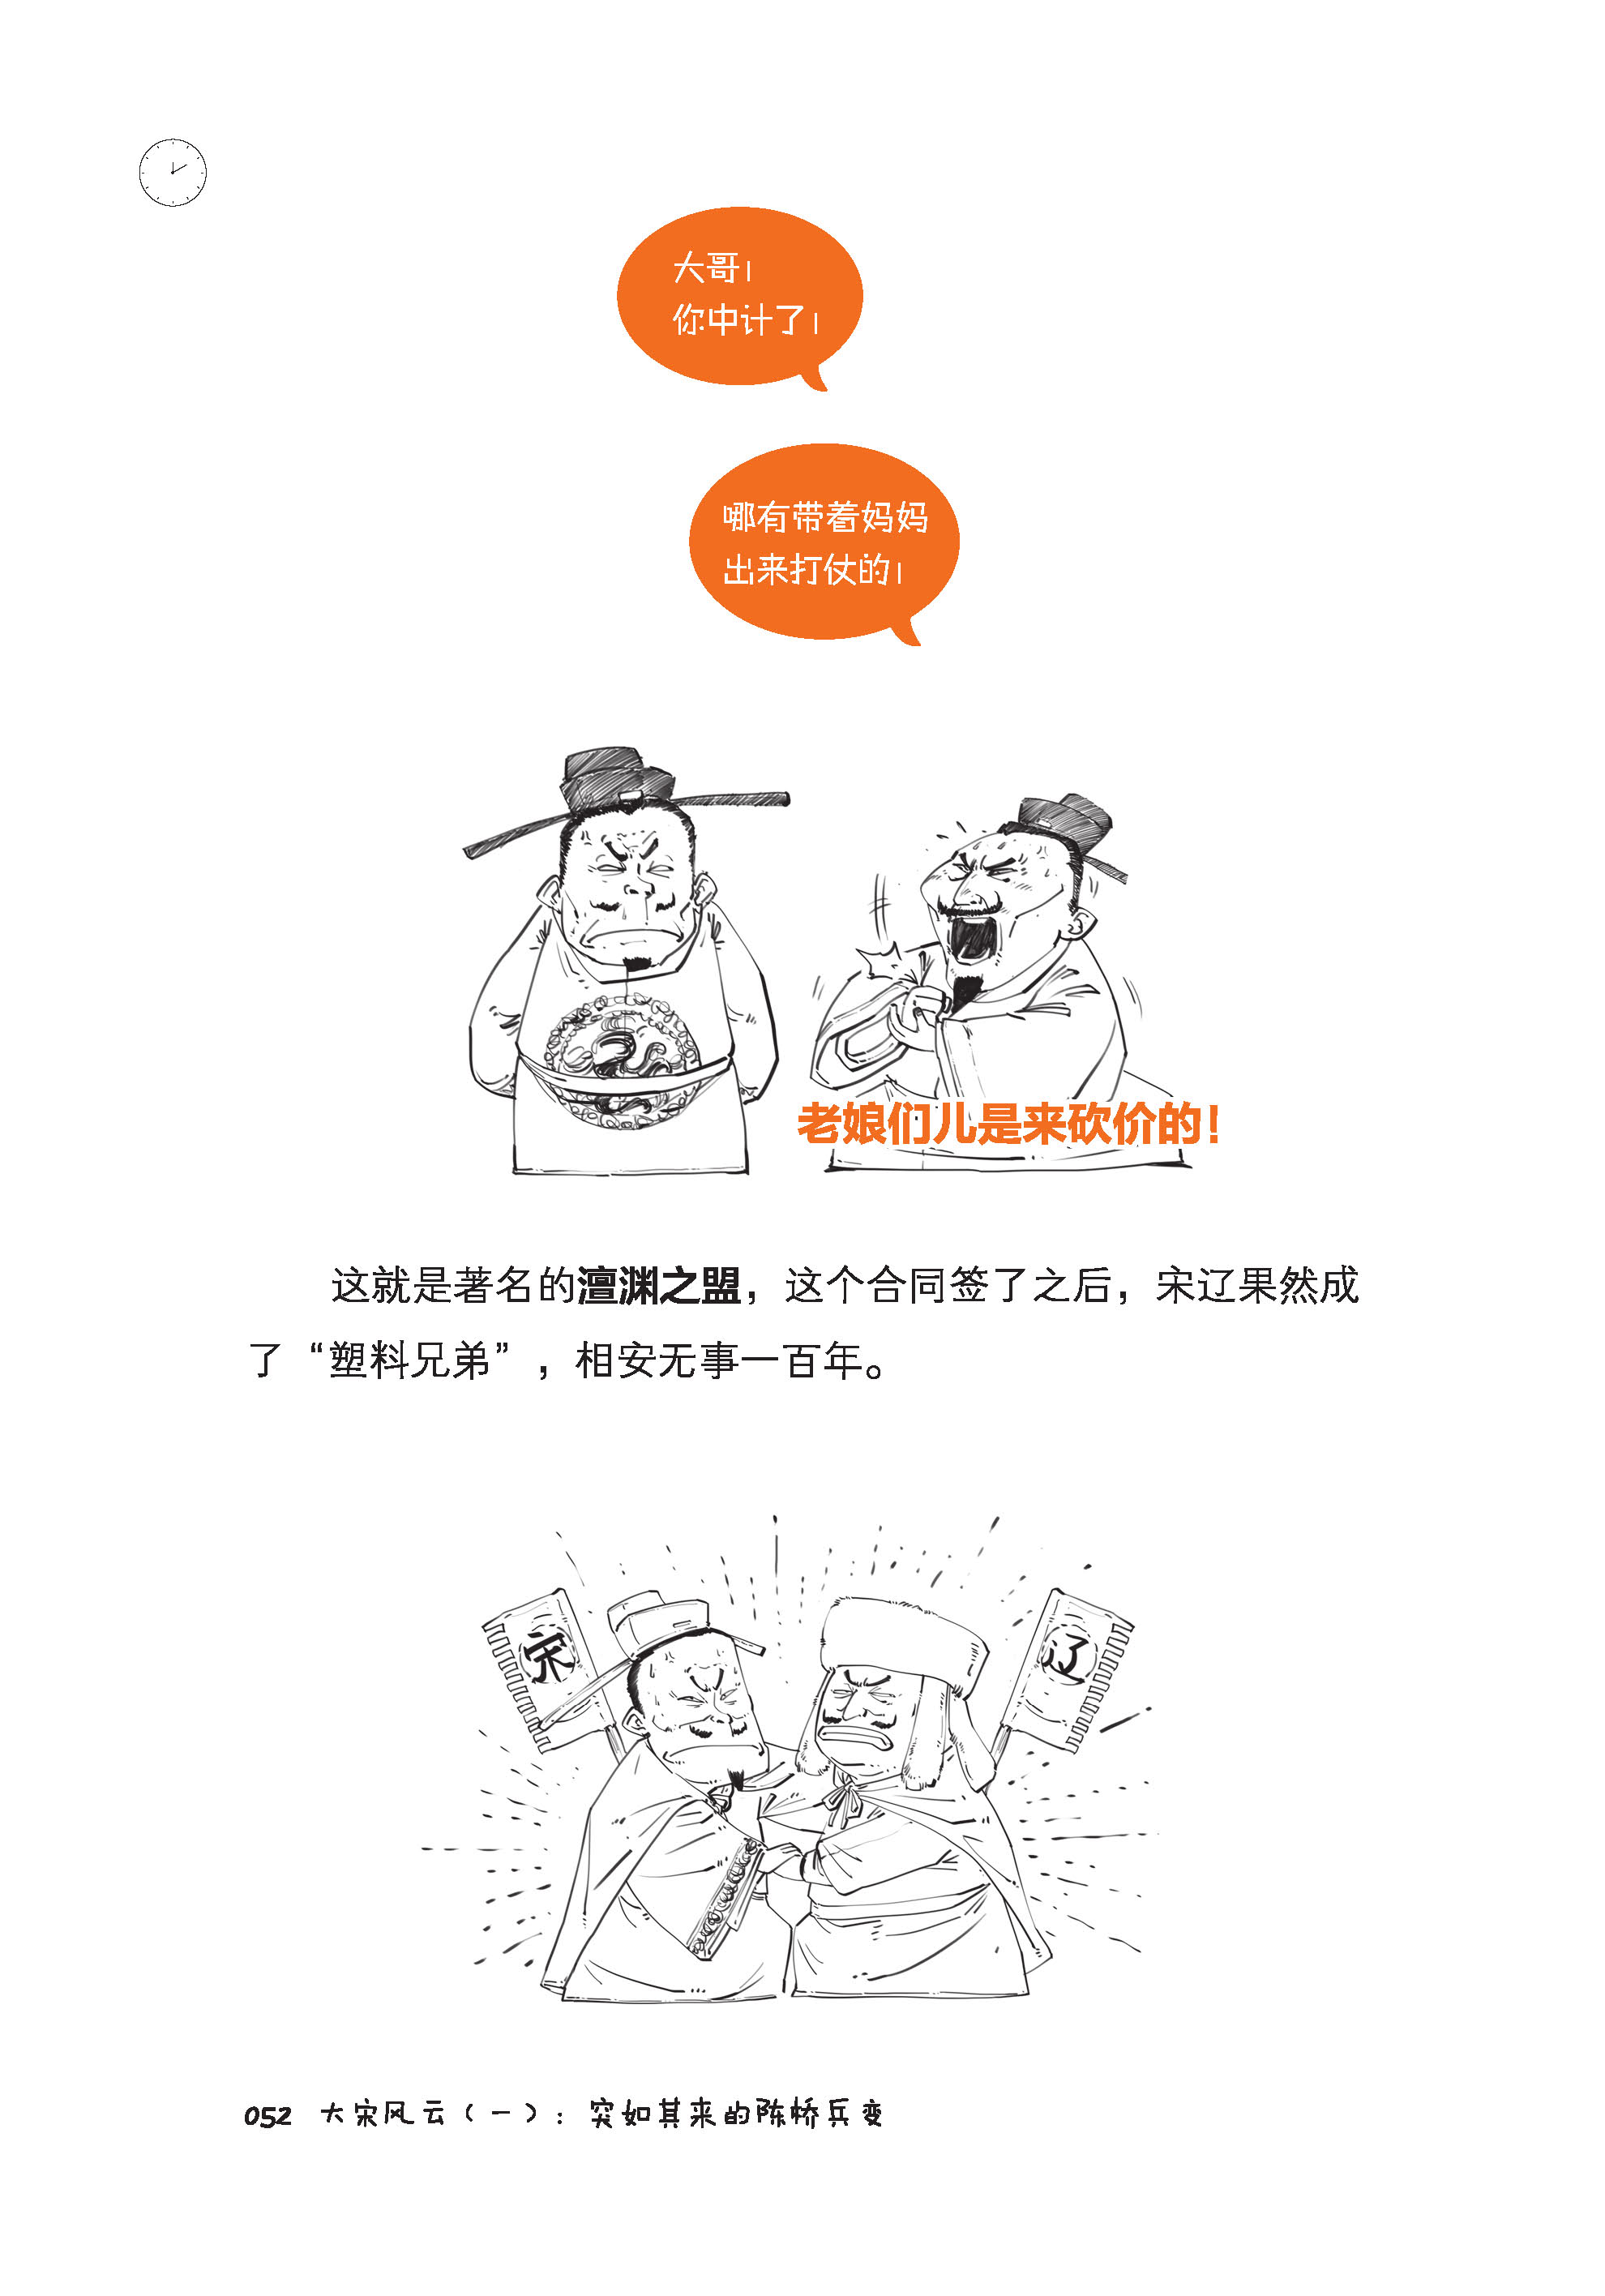 全5册半小时漫画中国史全套1234世界史二混子陈磊中华上下五千年历史